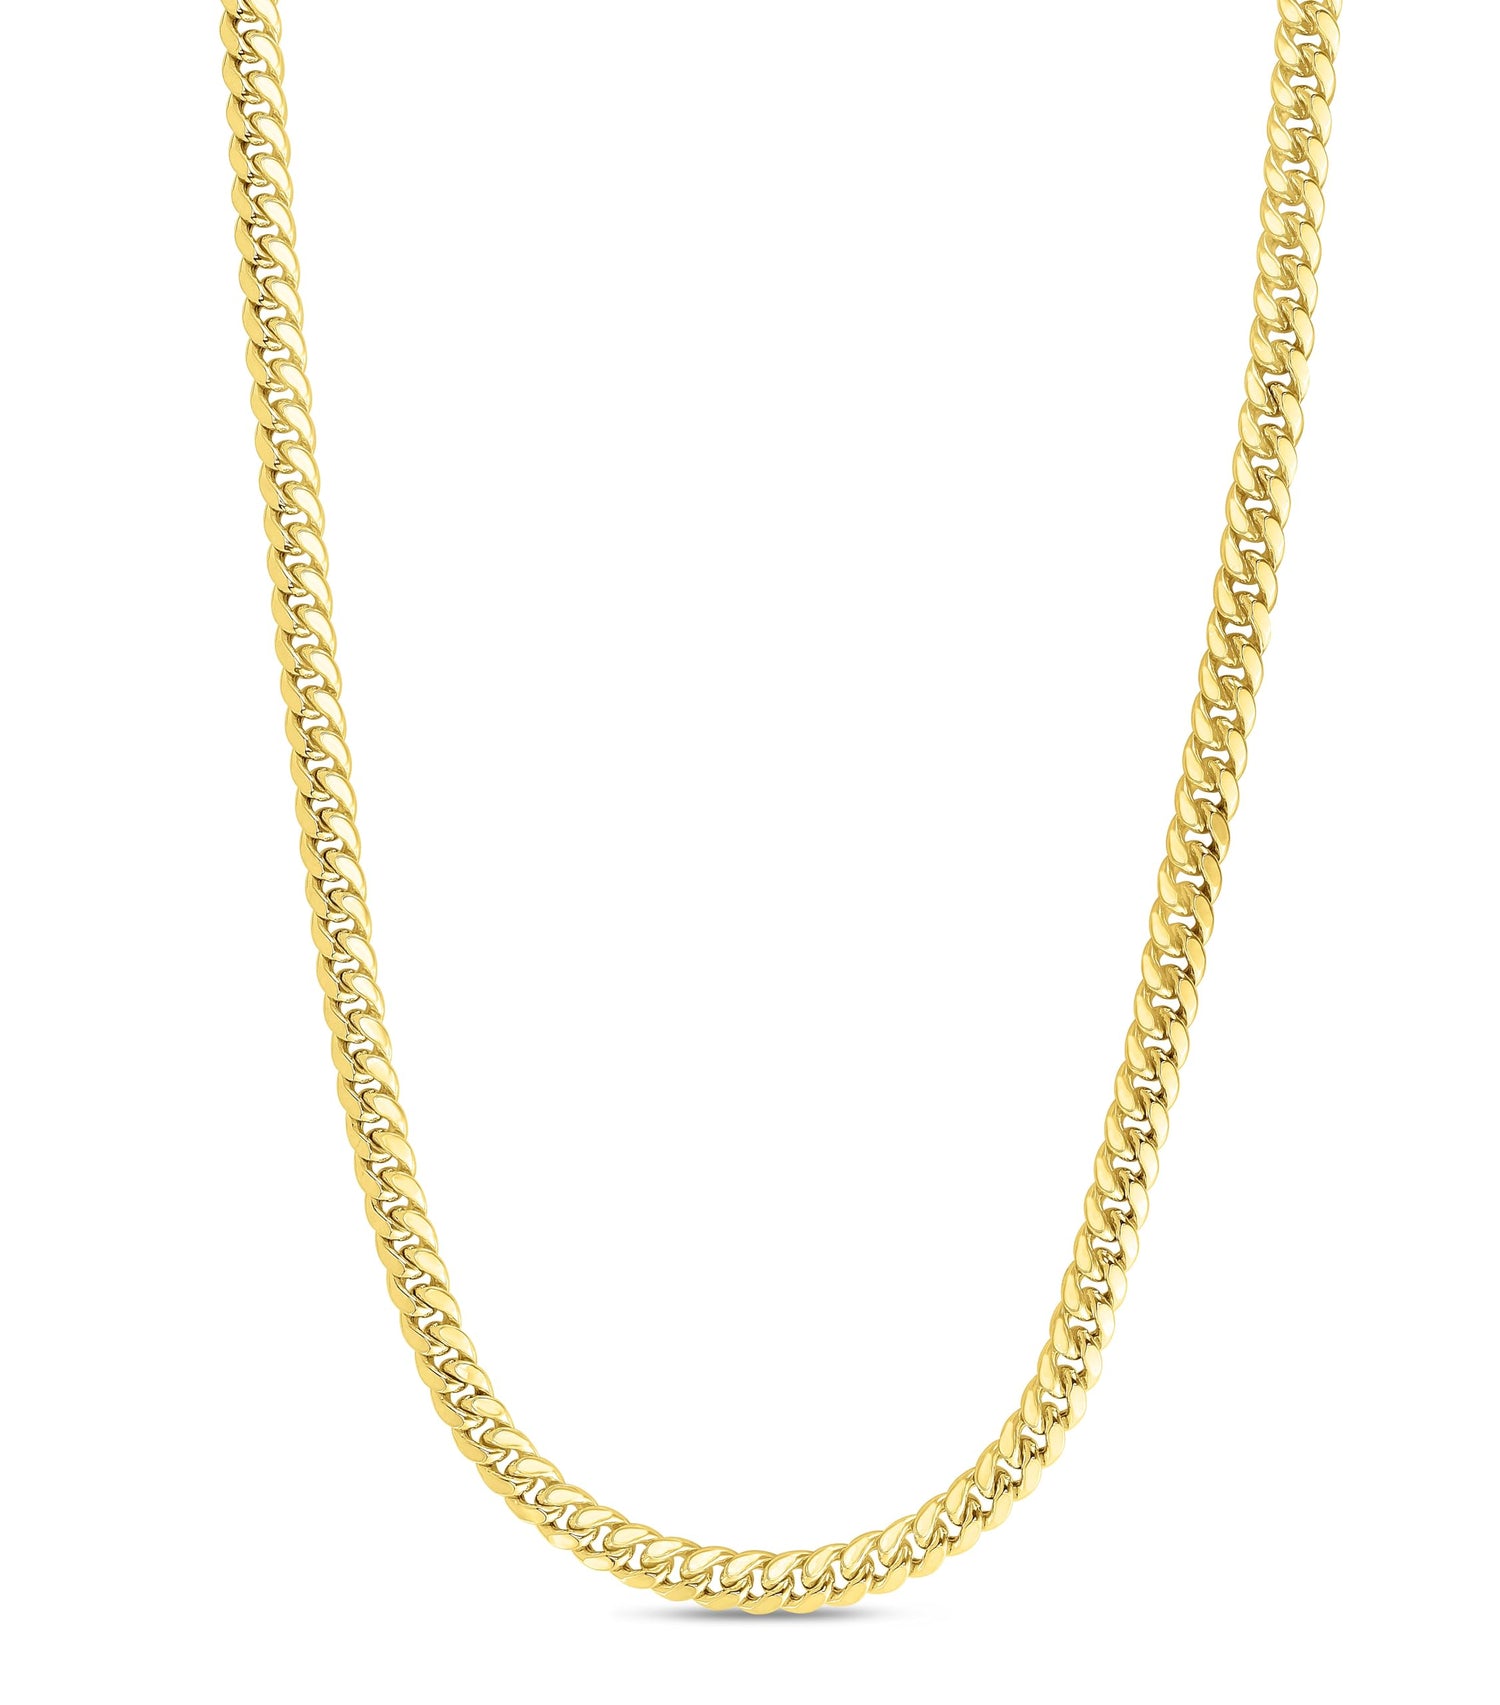 10k Yellow Gold 7.3mm Semi-Lite Miami Cuban Chain Necklace